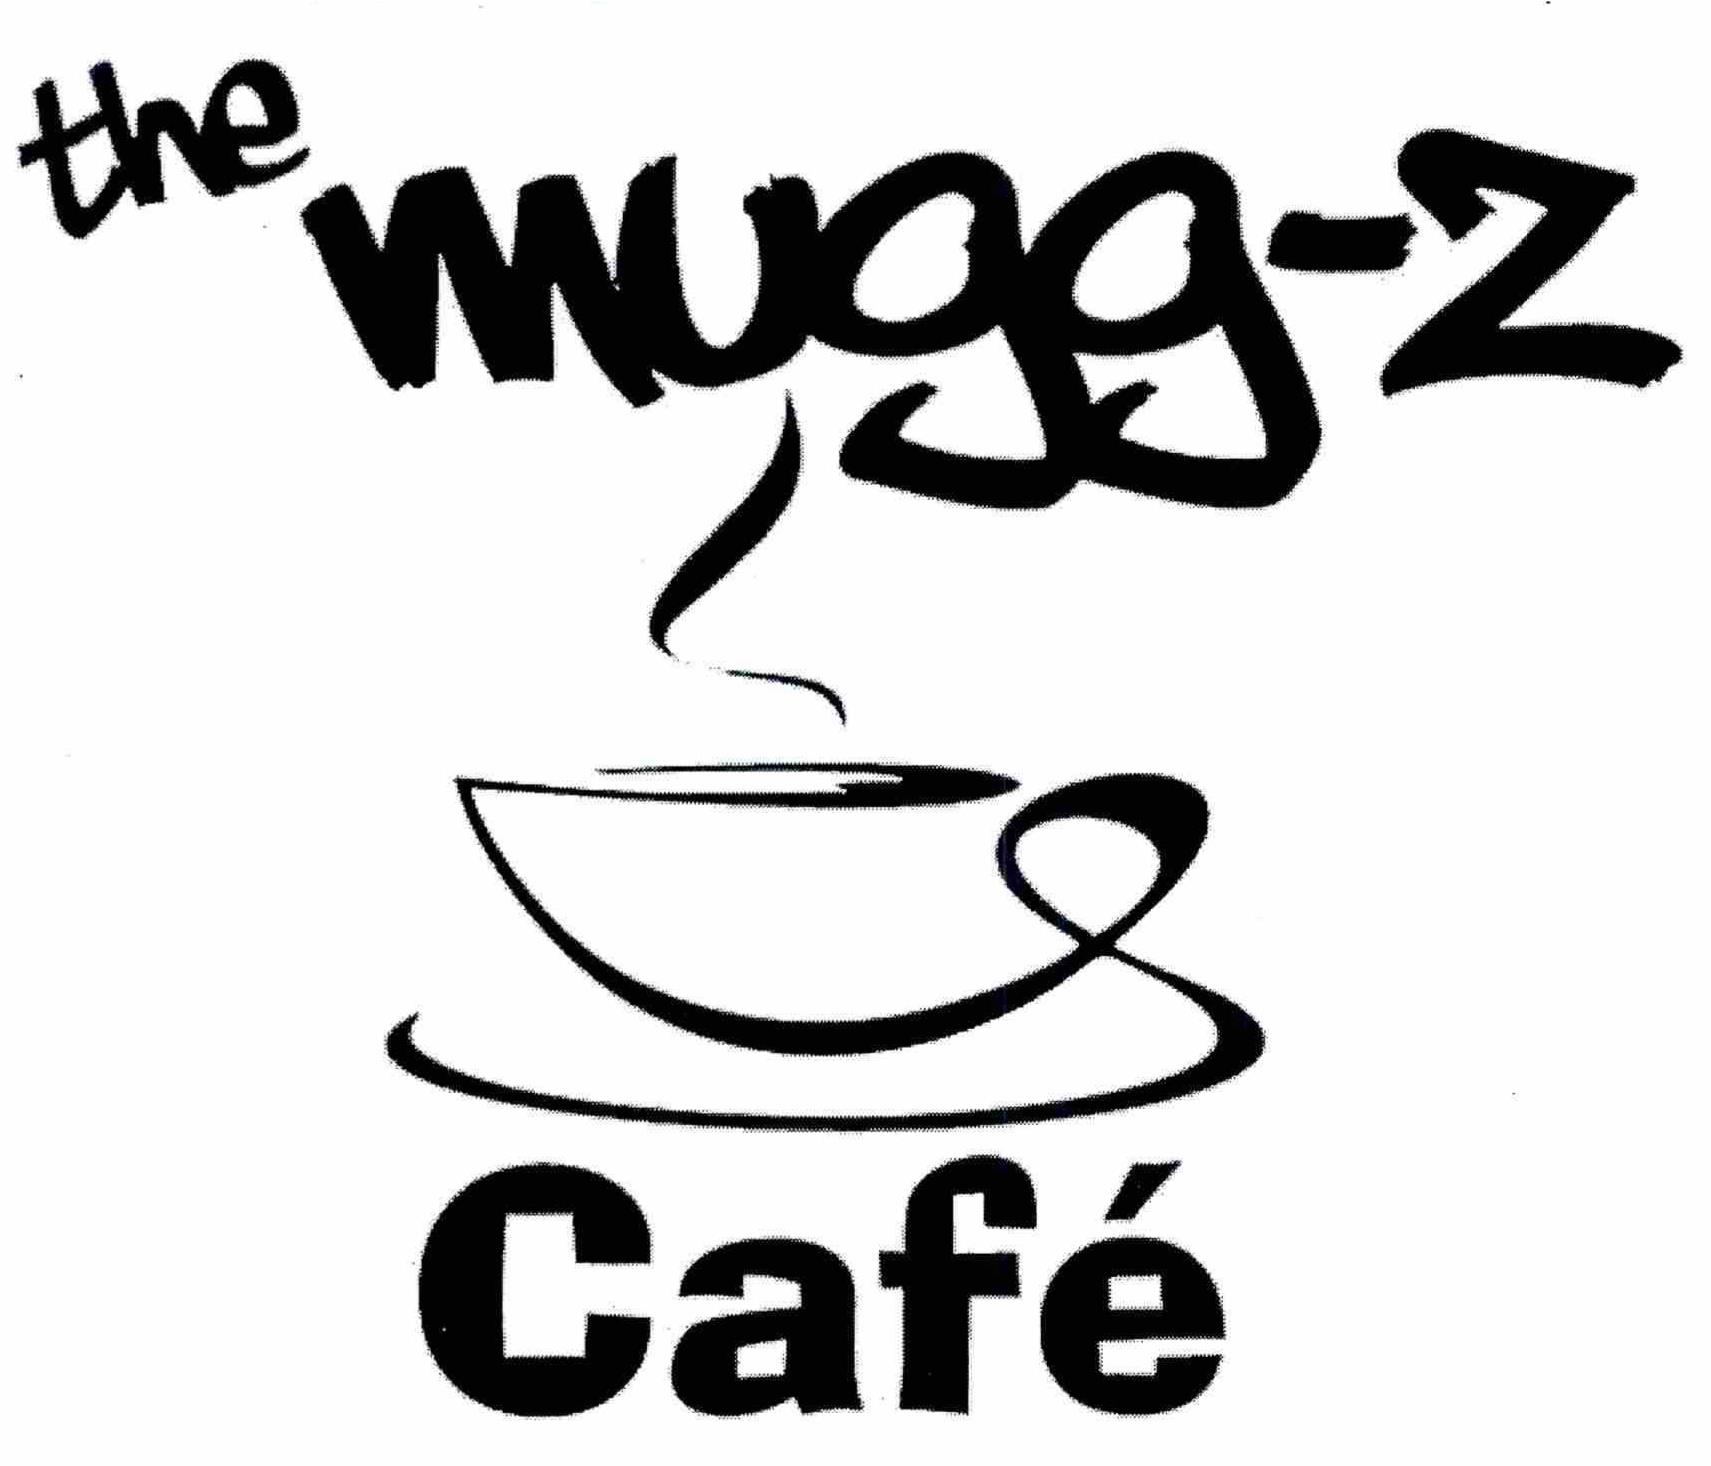  THE MUGG-Z CAFE